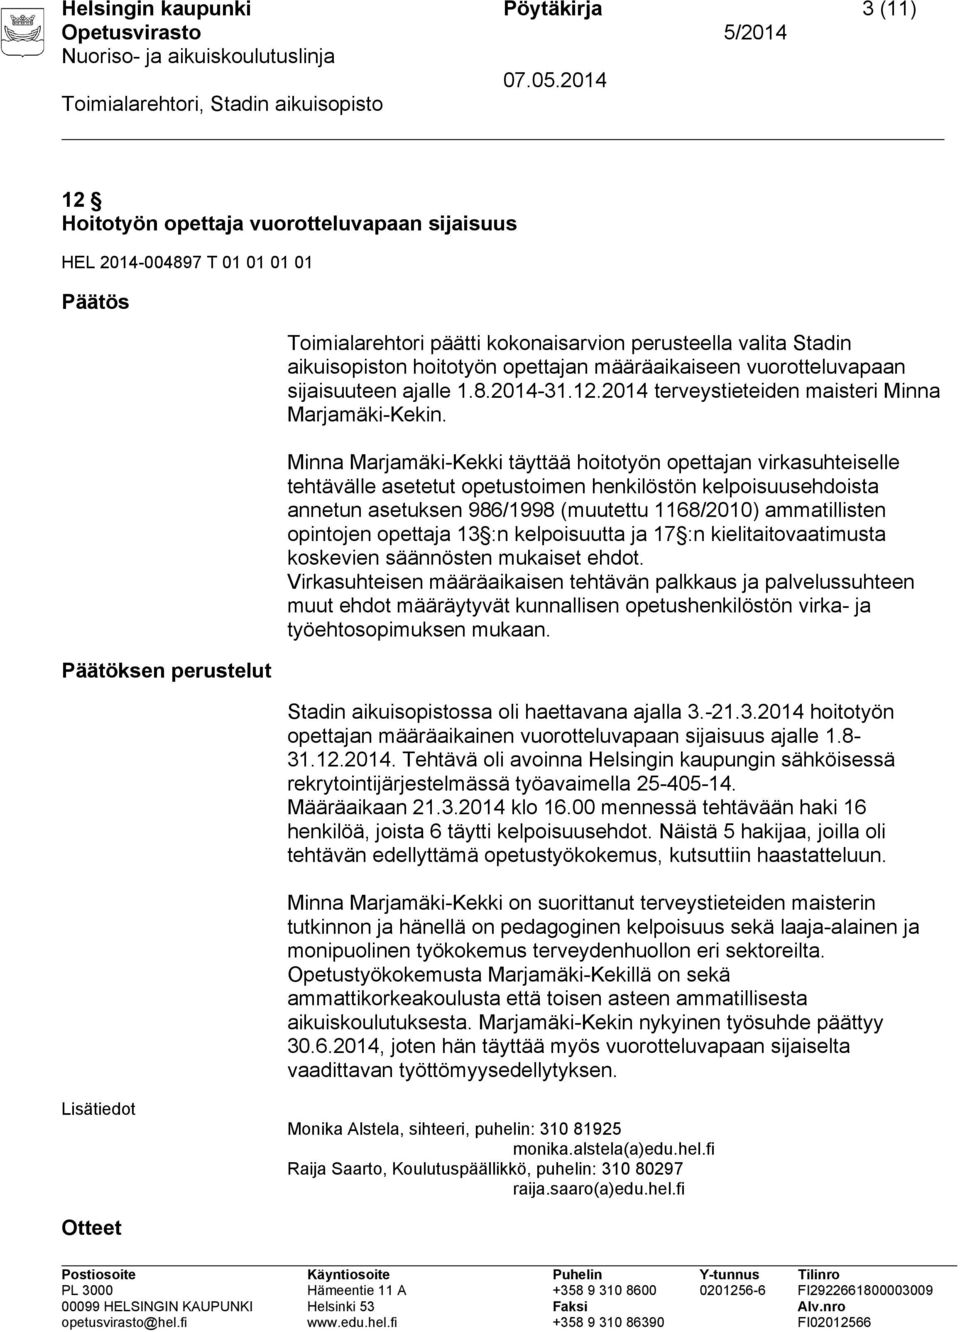 Minna Marjamäki-Kekki täyttää hoitotyön opettajan virkasuhteiselle tehtävälle asetetut opetustoimen henkilöstön kelpoisuusehdoista annetun asetuksen 986/1998 (muutettu 1168/2010) ammatillisten